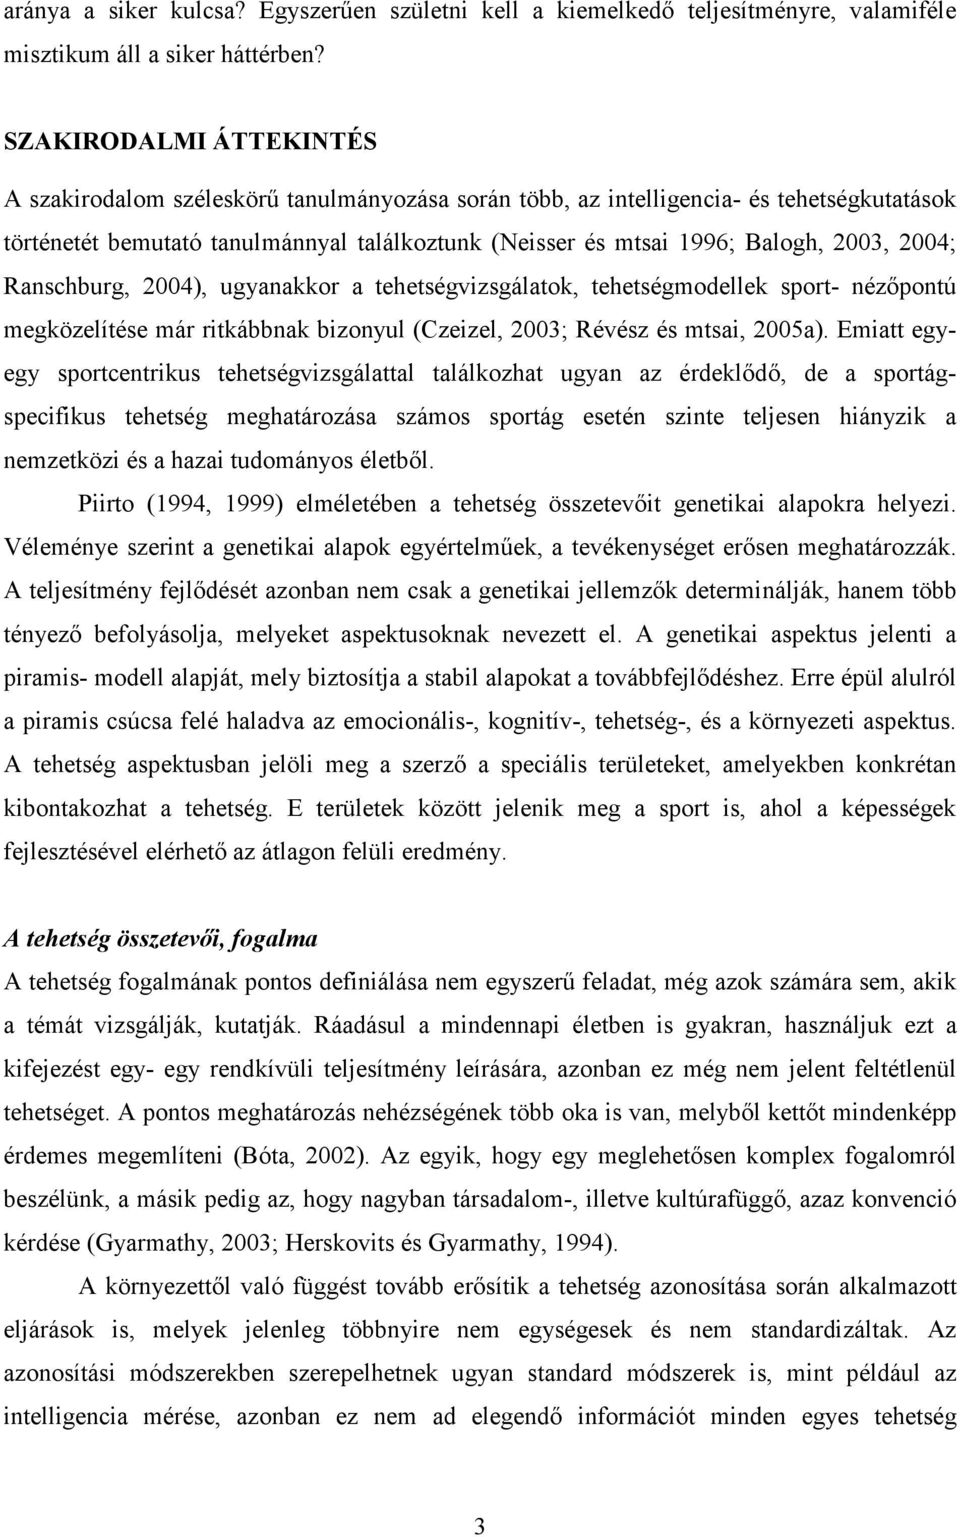 2004; Ranschburg, 2004), ugyanakkor a tehetségvizsgálatok, tehetségmodellek sport- nézıpontú megközelítése már ritkábbnak bizonyul (Czeizel, 2003; Révész és mtsai, 2005a).